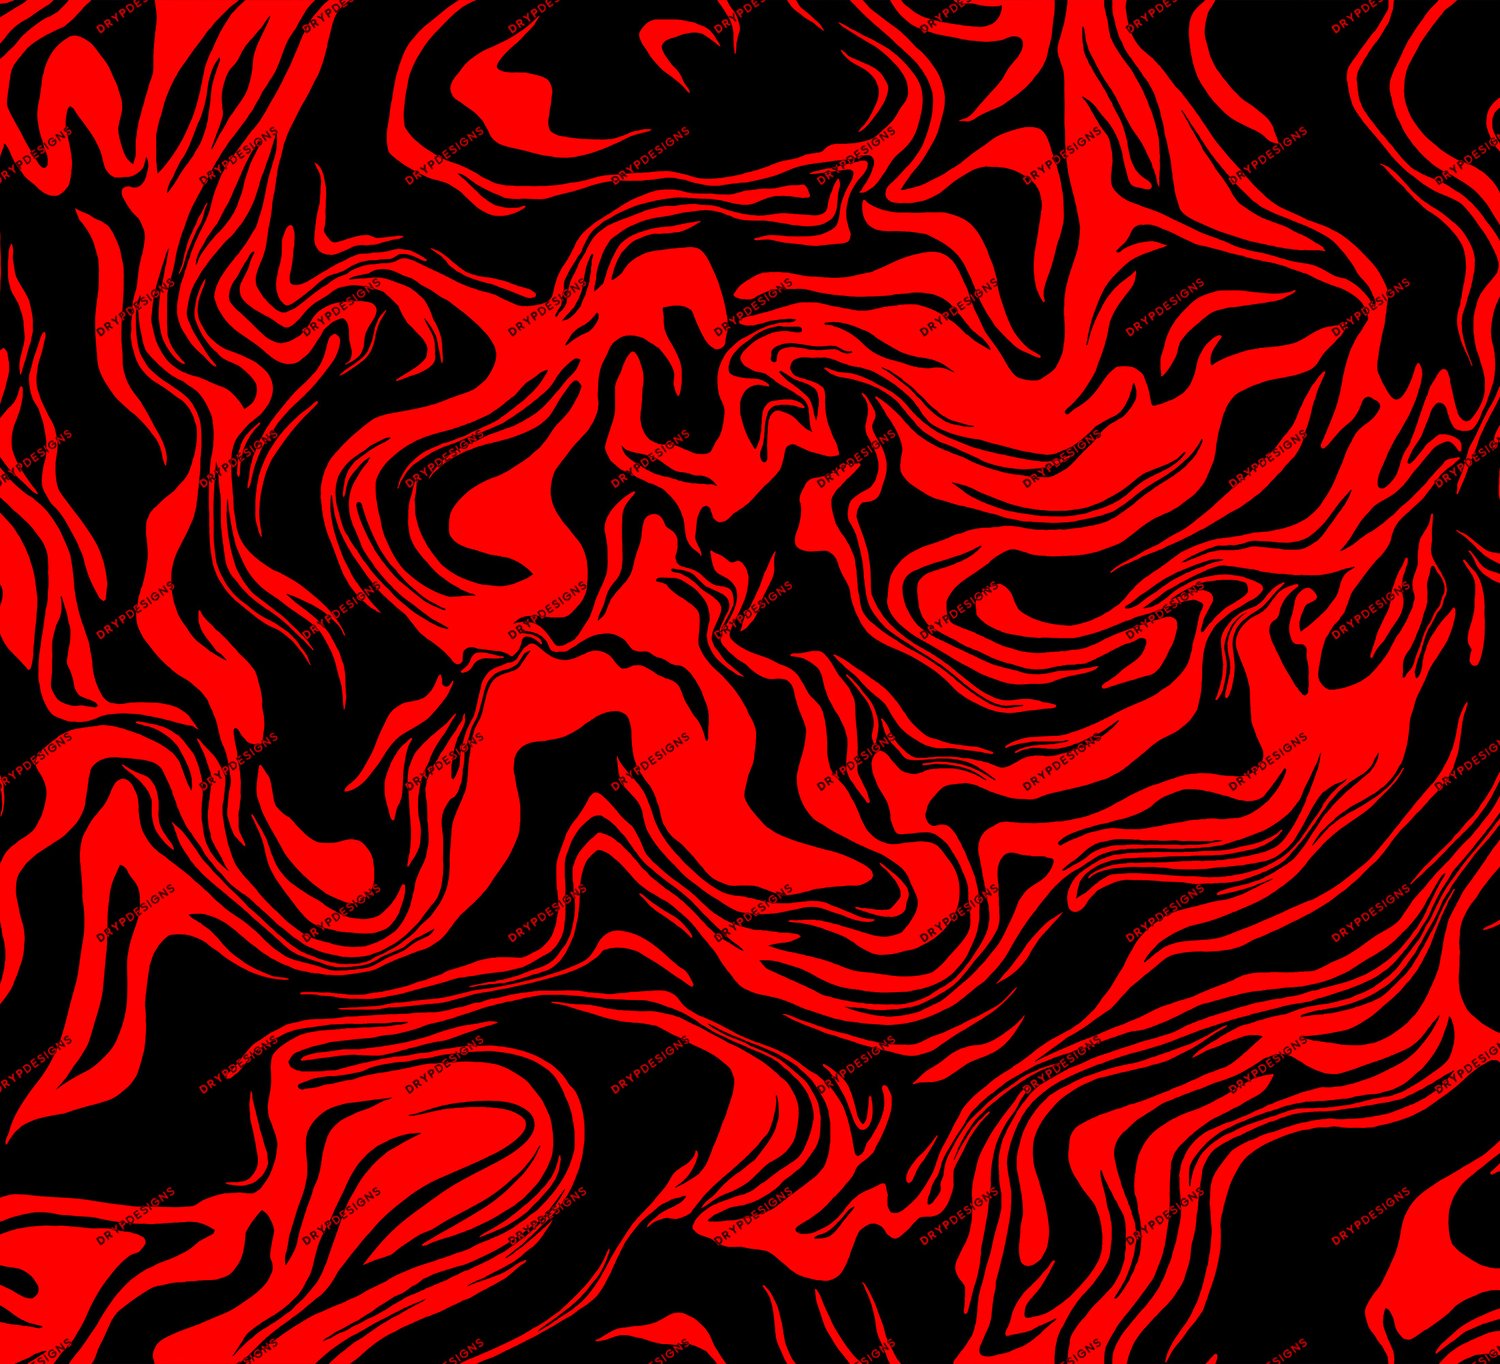 Ødelæggelse Føde kom videre Black + Red Marble Swirl Seamless Background — drypdesigns